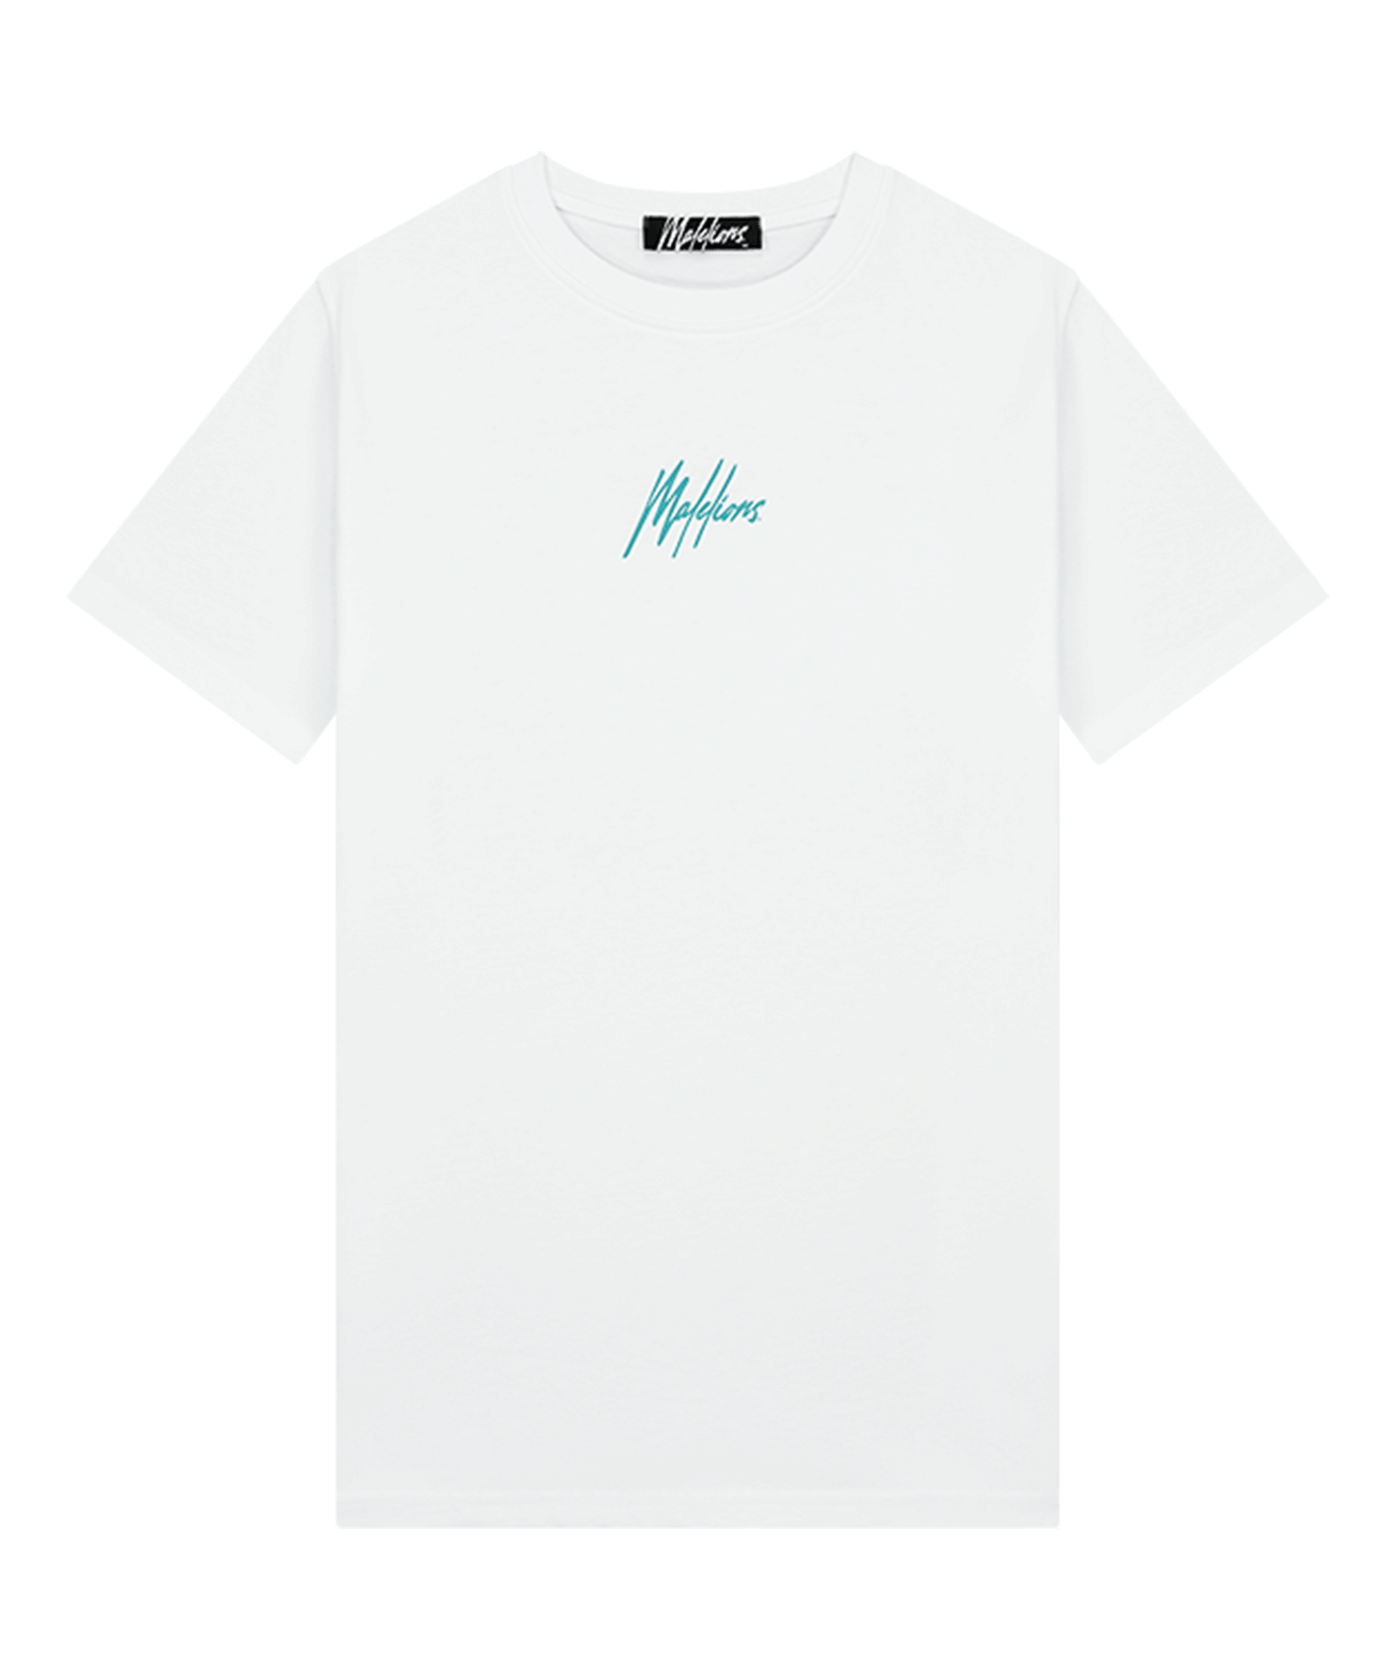 Malelions - Sunset Oasis - T-shirt - White